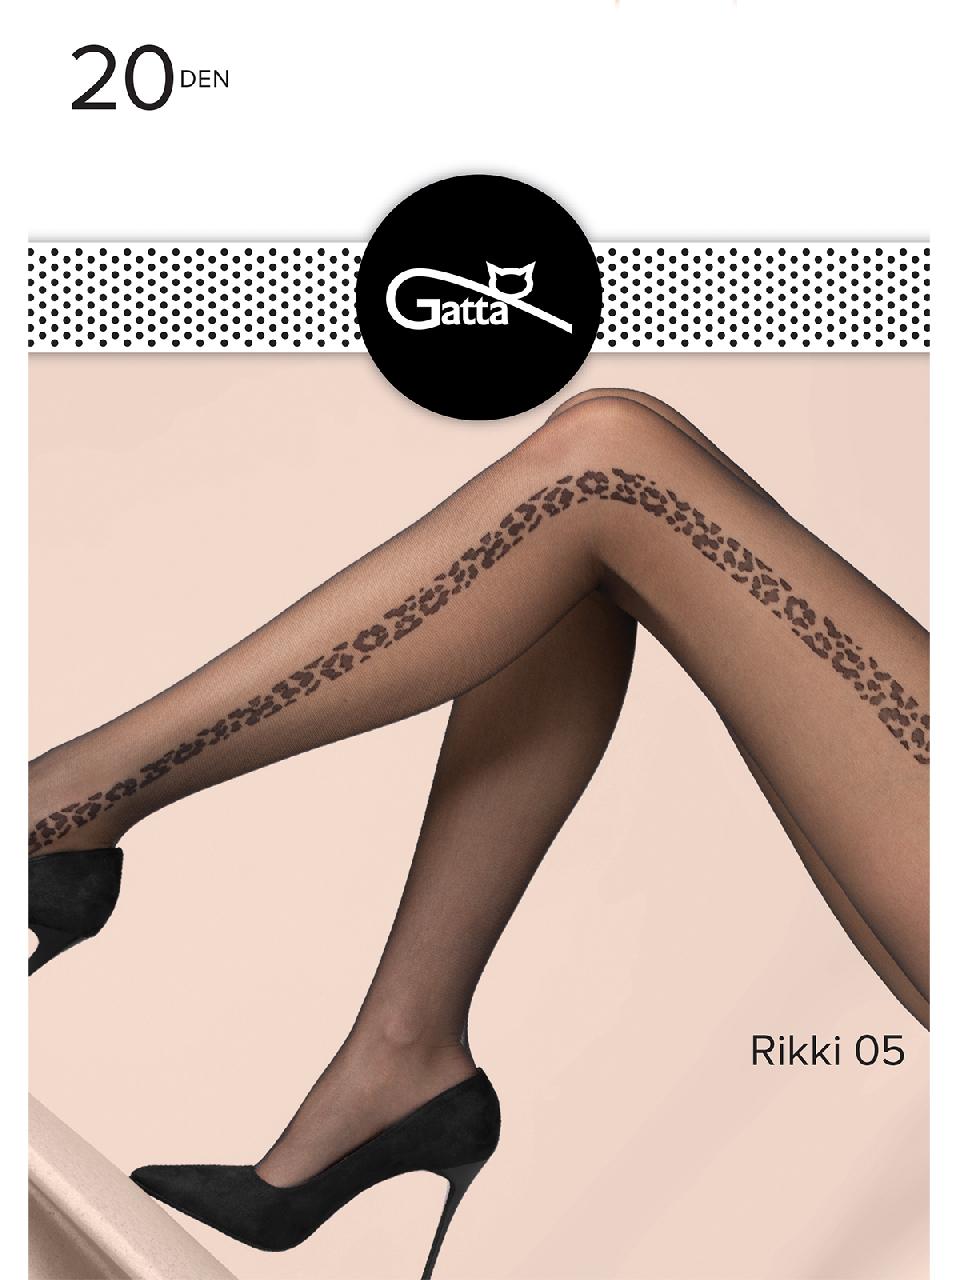 GT Rikki 05 /колготки/ nero 2